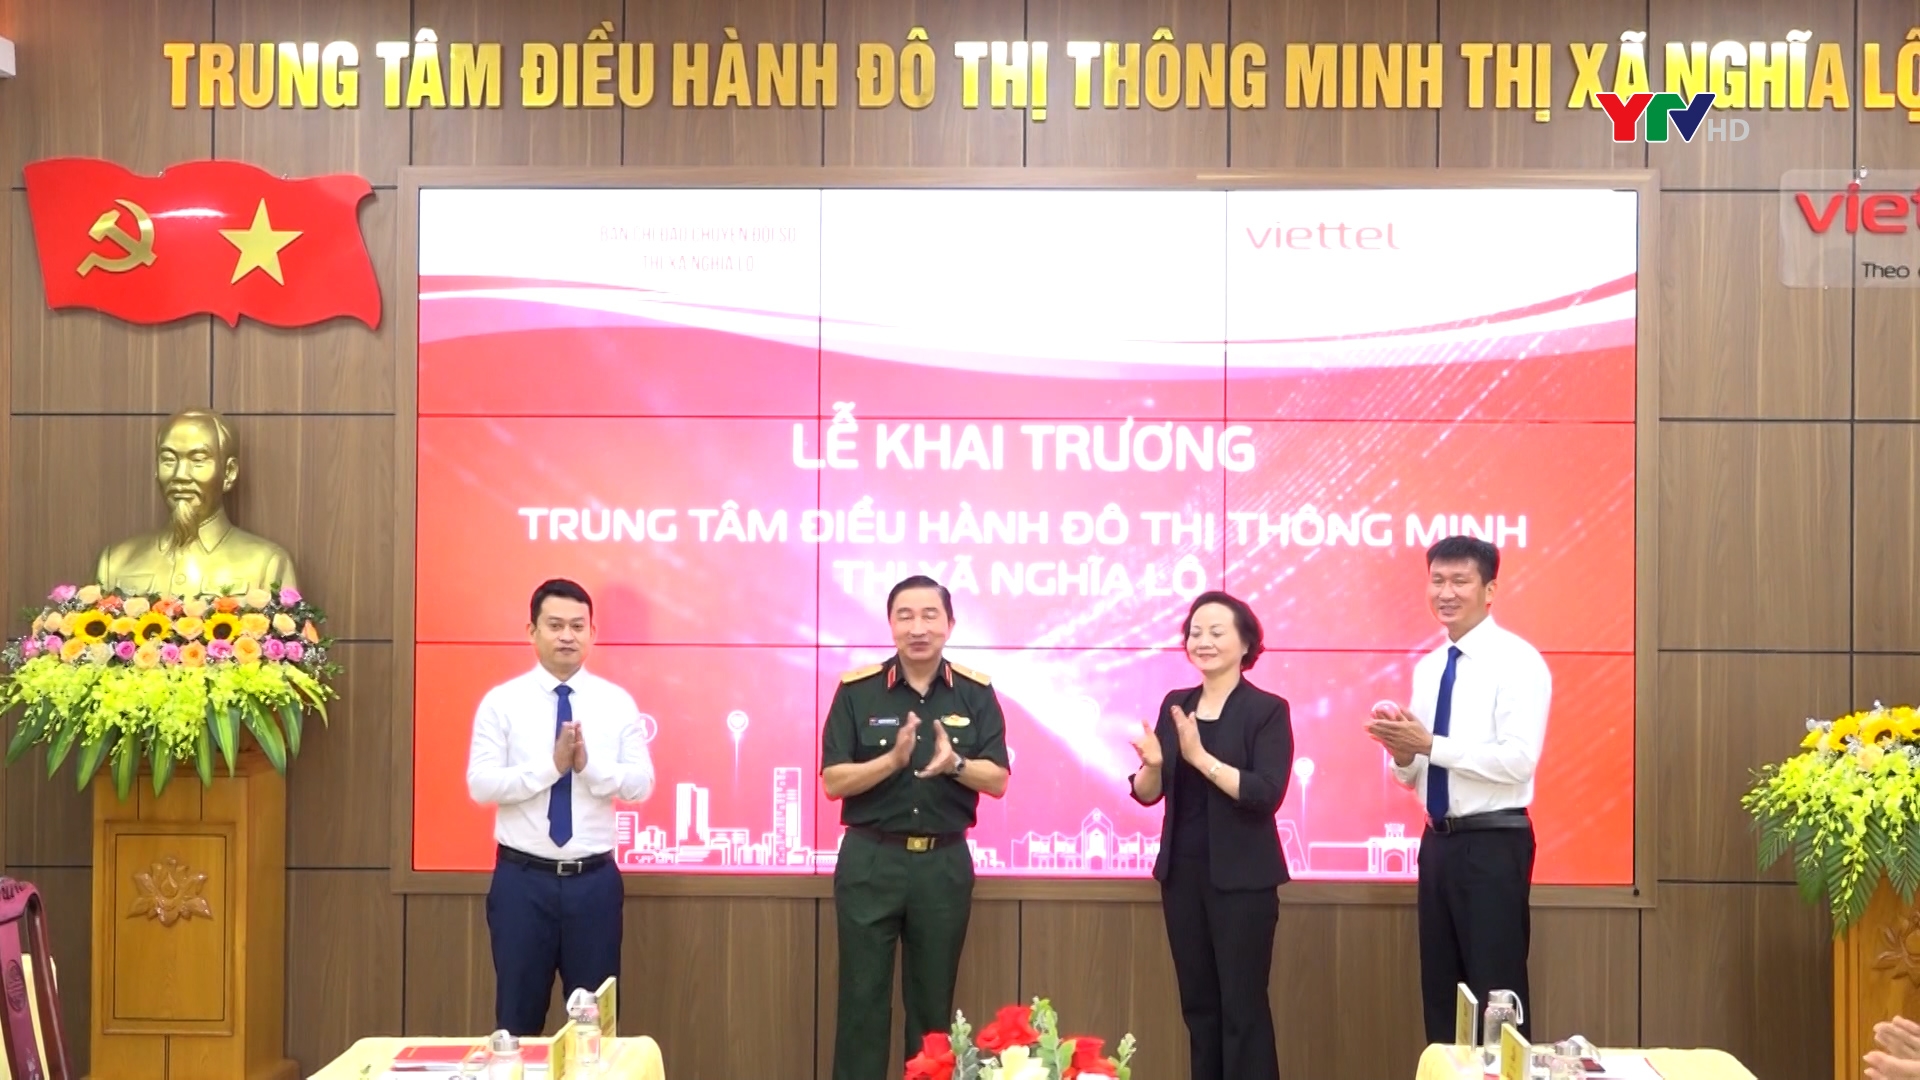 Đồng chí Bộ trưởng Bộ Nội vụ Phạm Thị Thanh Trà dự khai trương Trung tâm Điều hành đô thị thông minh thị xã Nghĩa Lộ